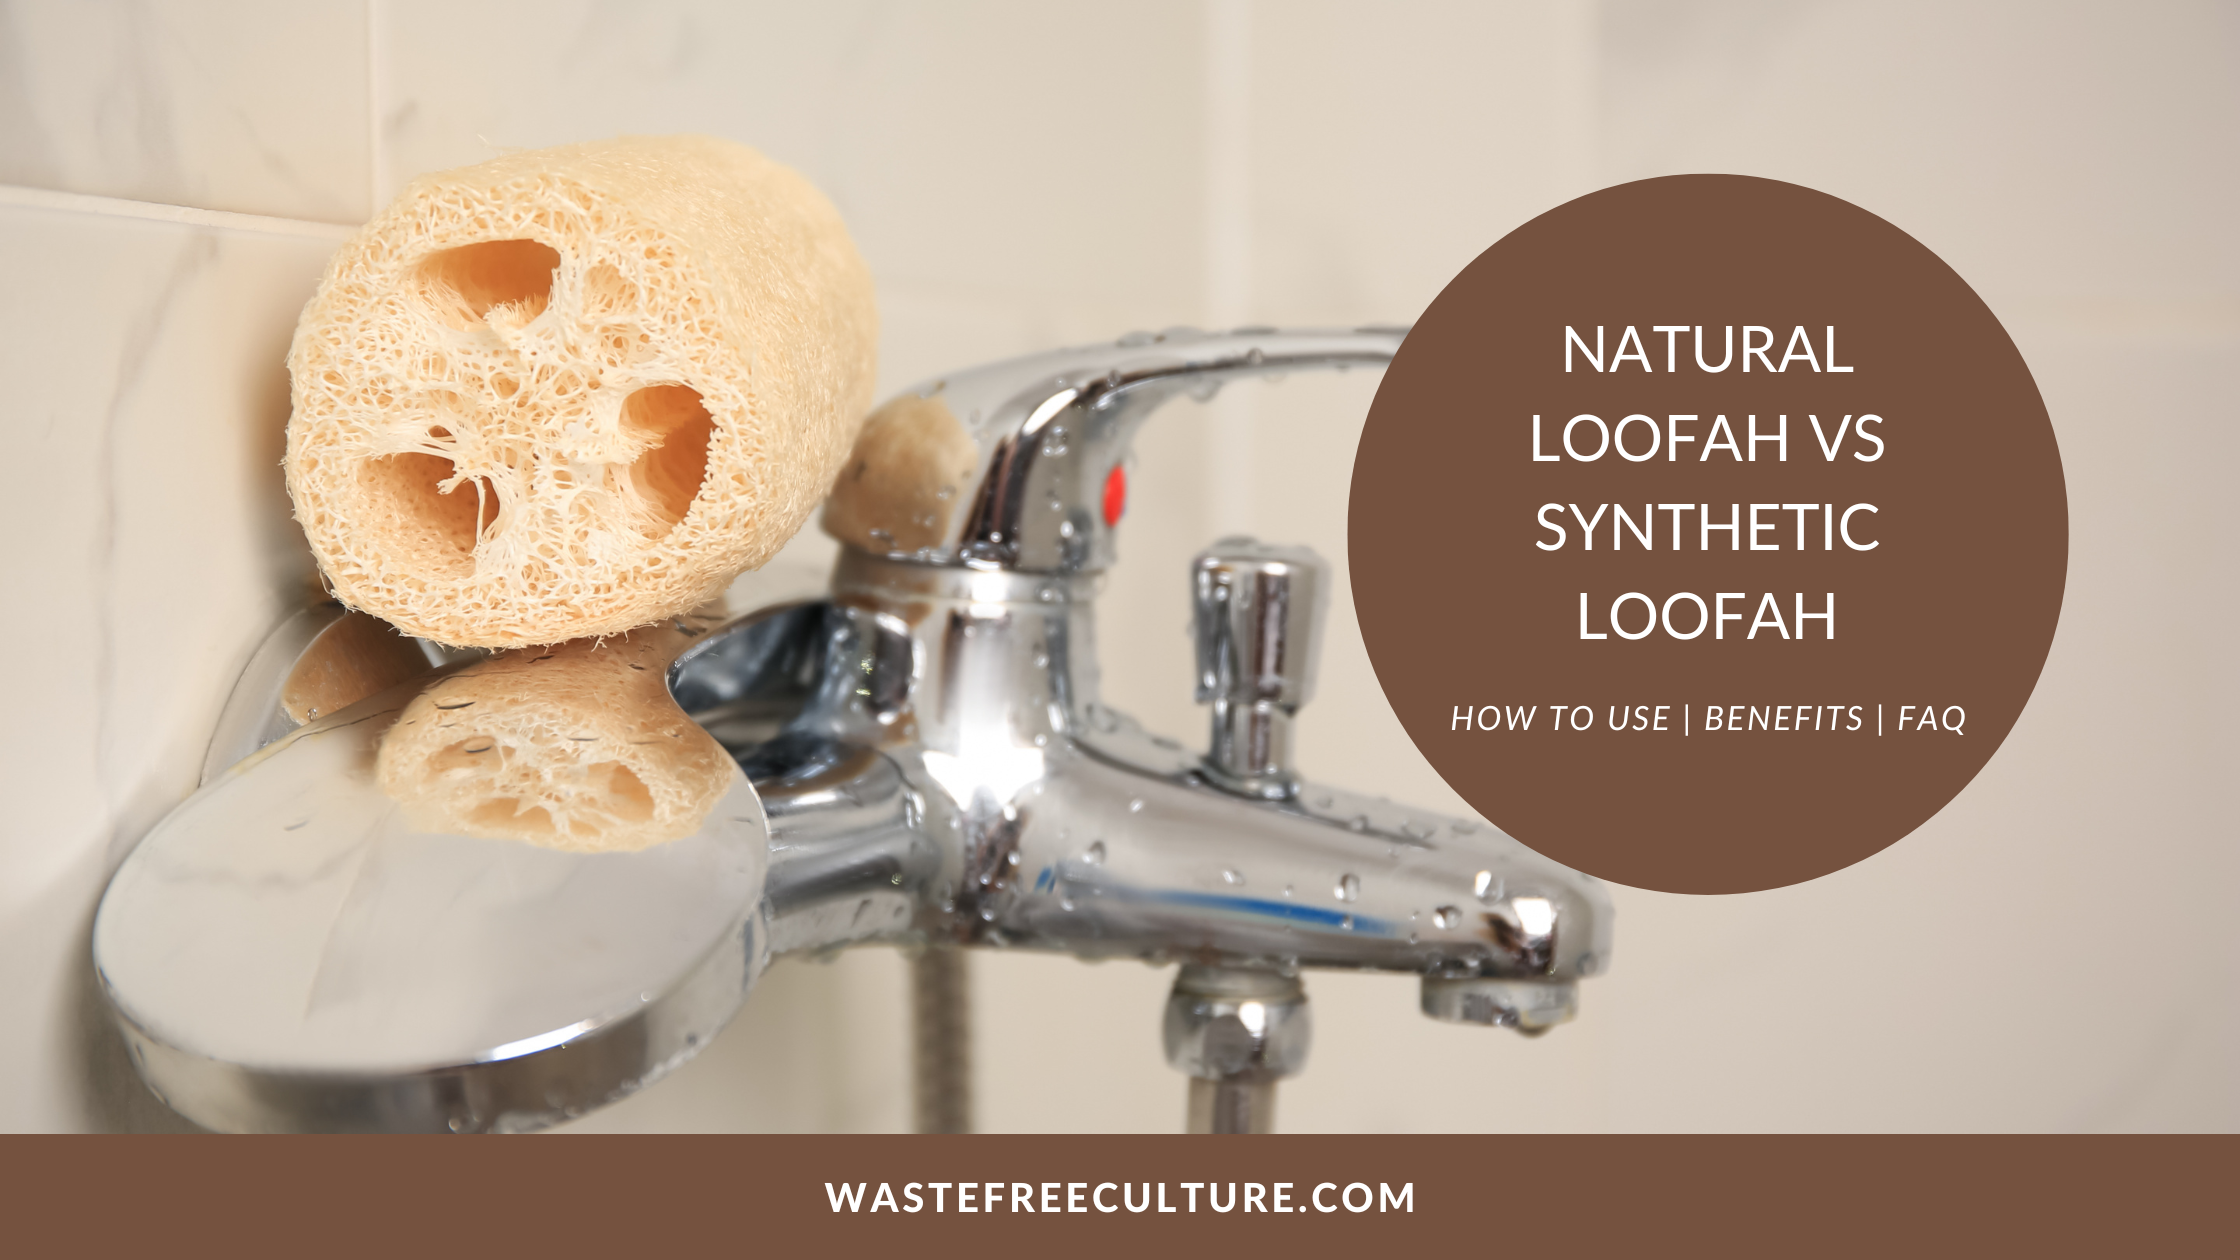 Natural Loofah vs Synthetic Loofah, Natural Loofah Benefits, How to Use, FAQ